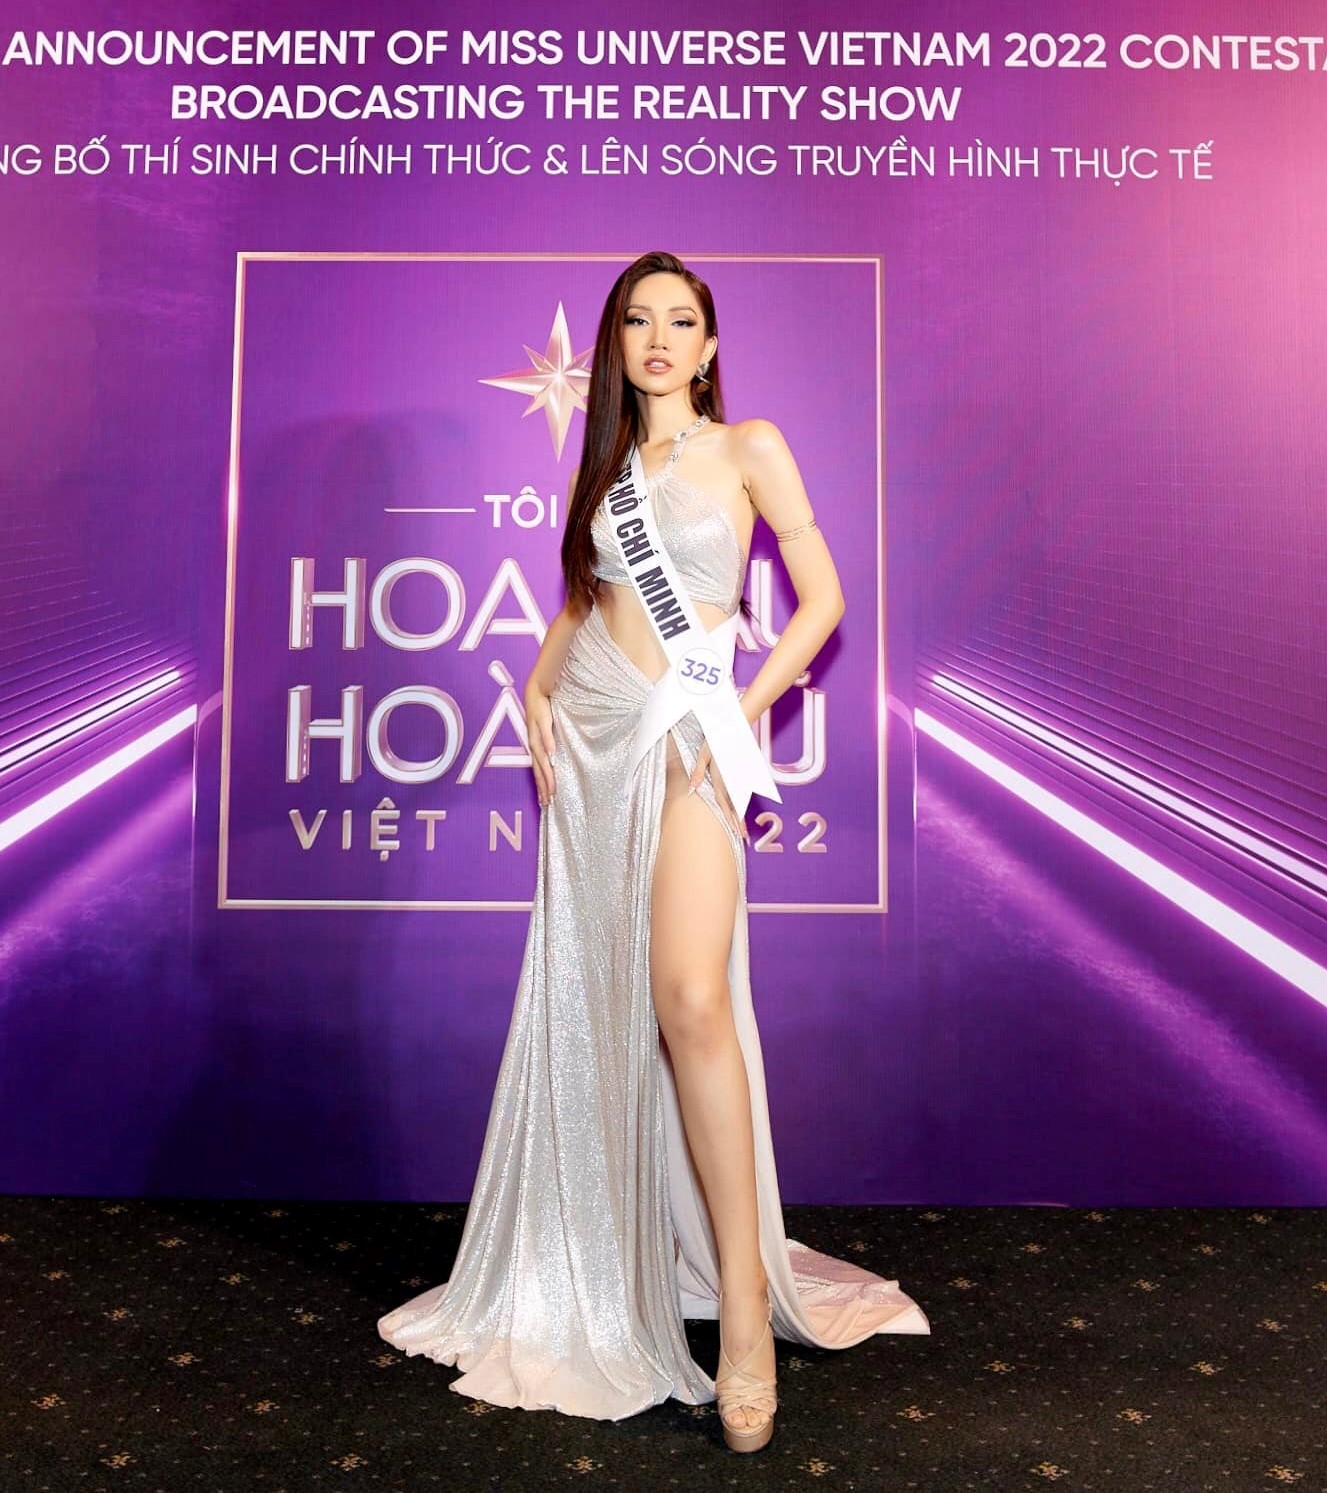 Đỗ Nhật Hà, người đẹp chuyển giới tại Hoa hậu Hoàn vũ Việt Nam là ai?